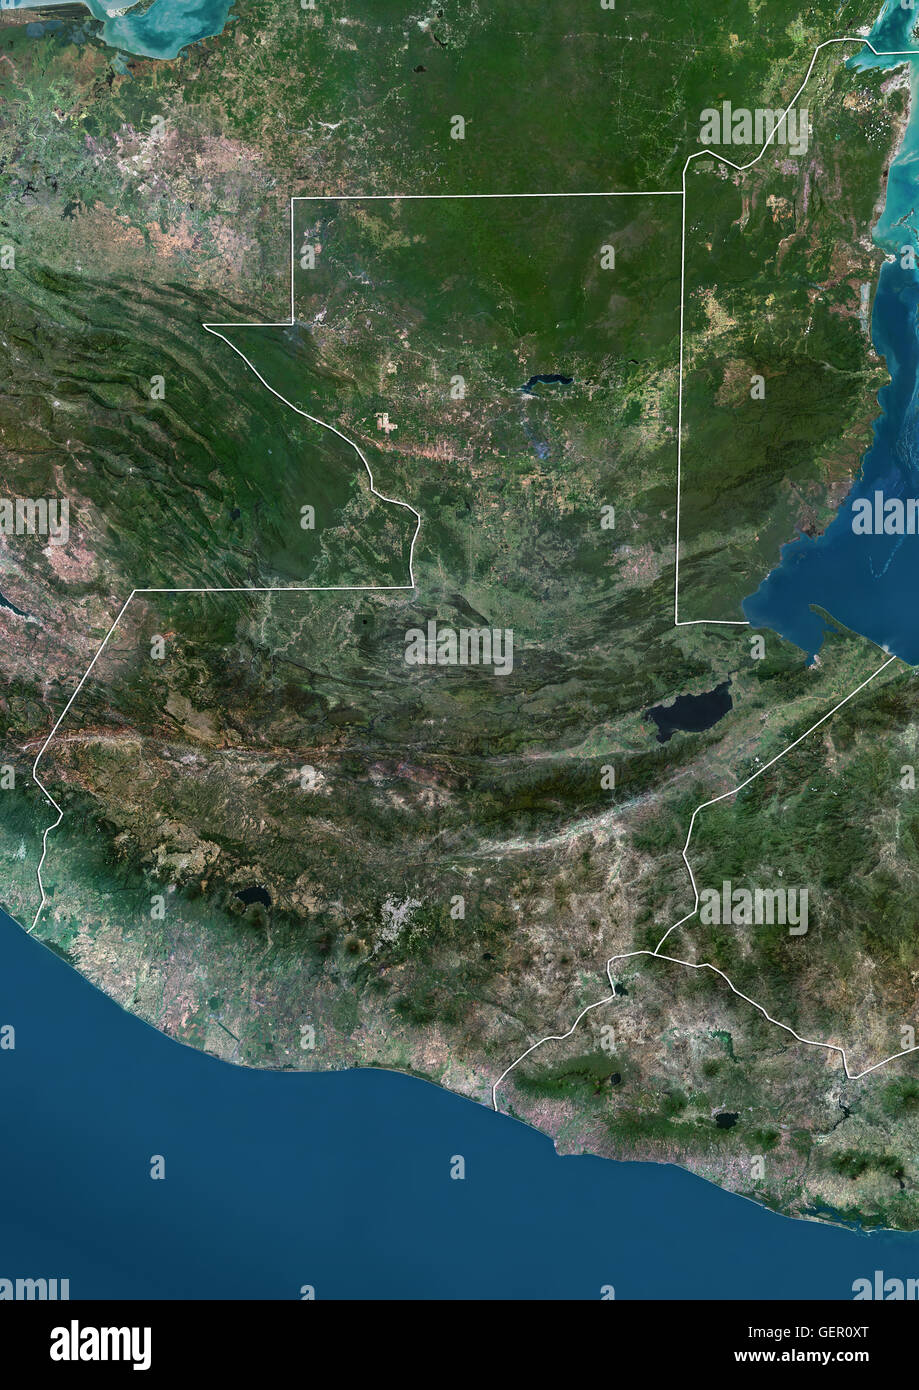 Satellitenansicht von Guatemala (mit Ländergrenzen). Dieses Bild wurde aus Daten von Landsat-Satelliten erworben erstellt. Stockfoto